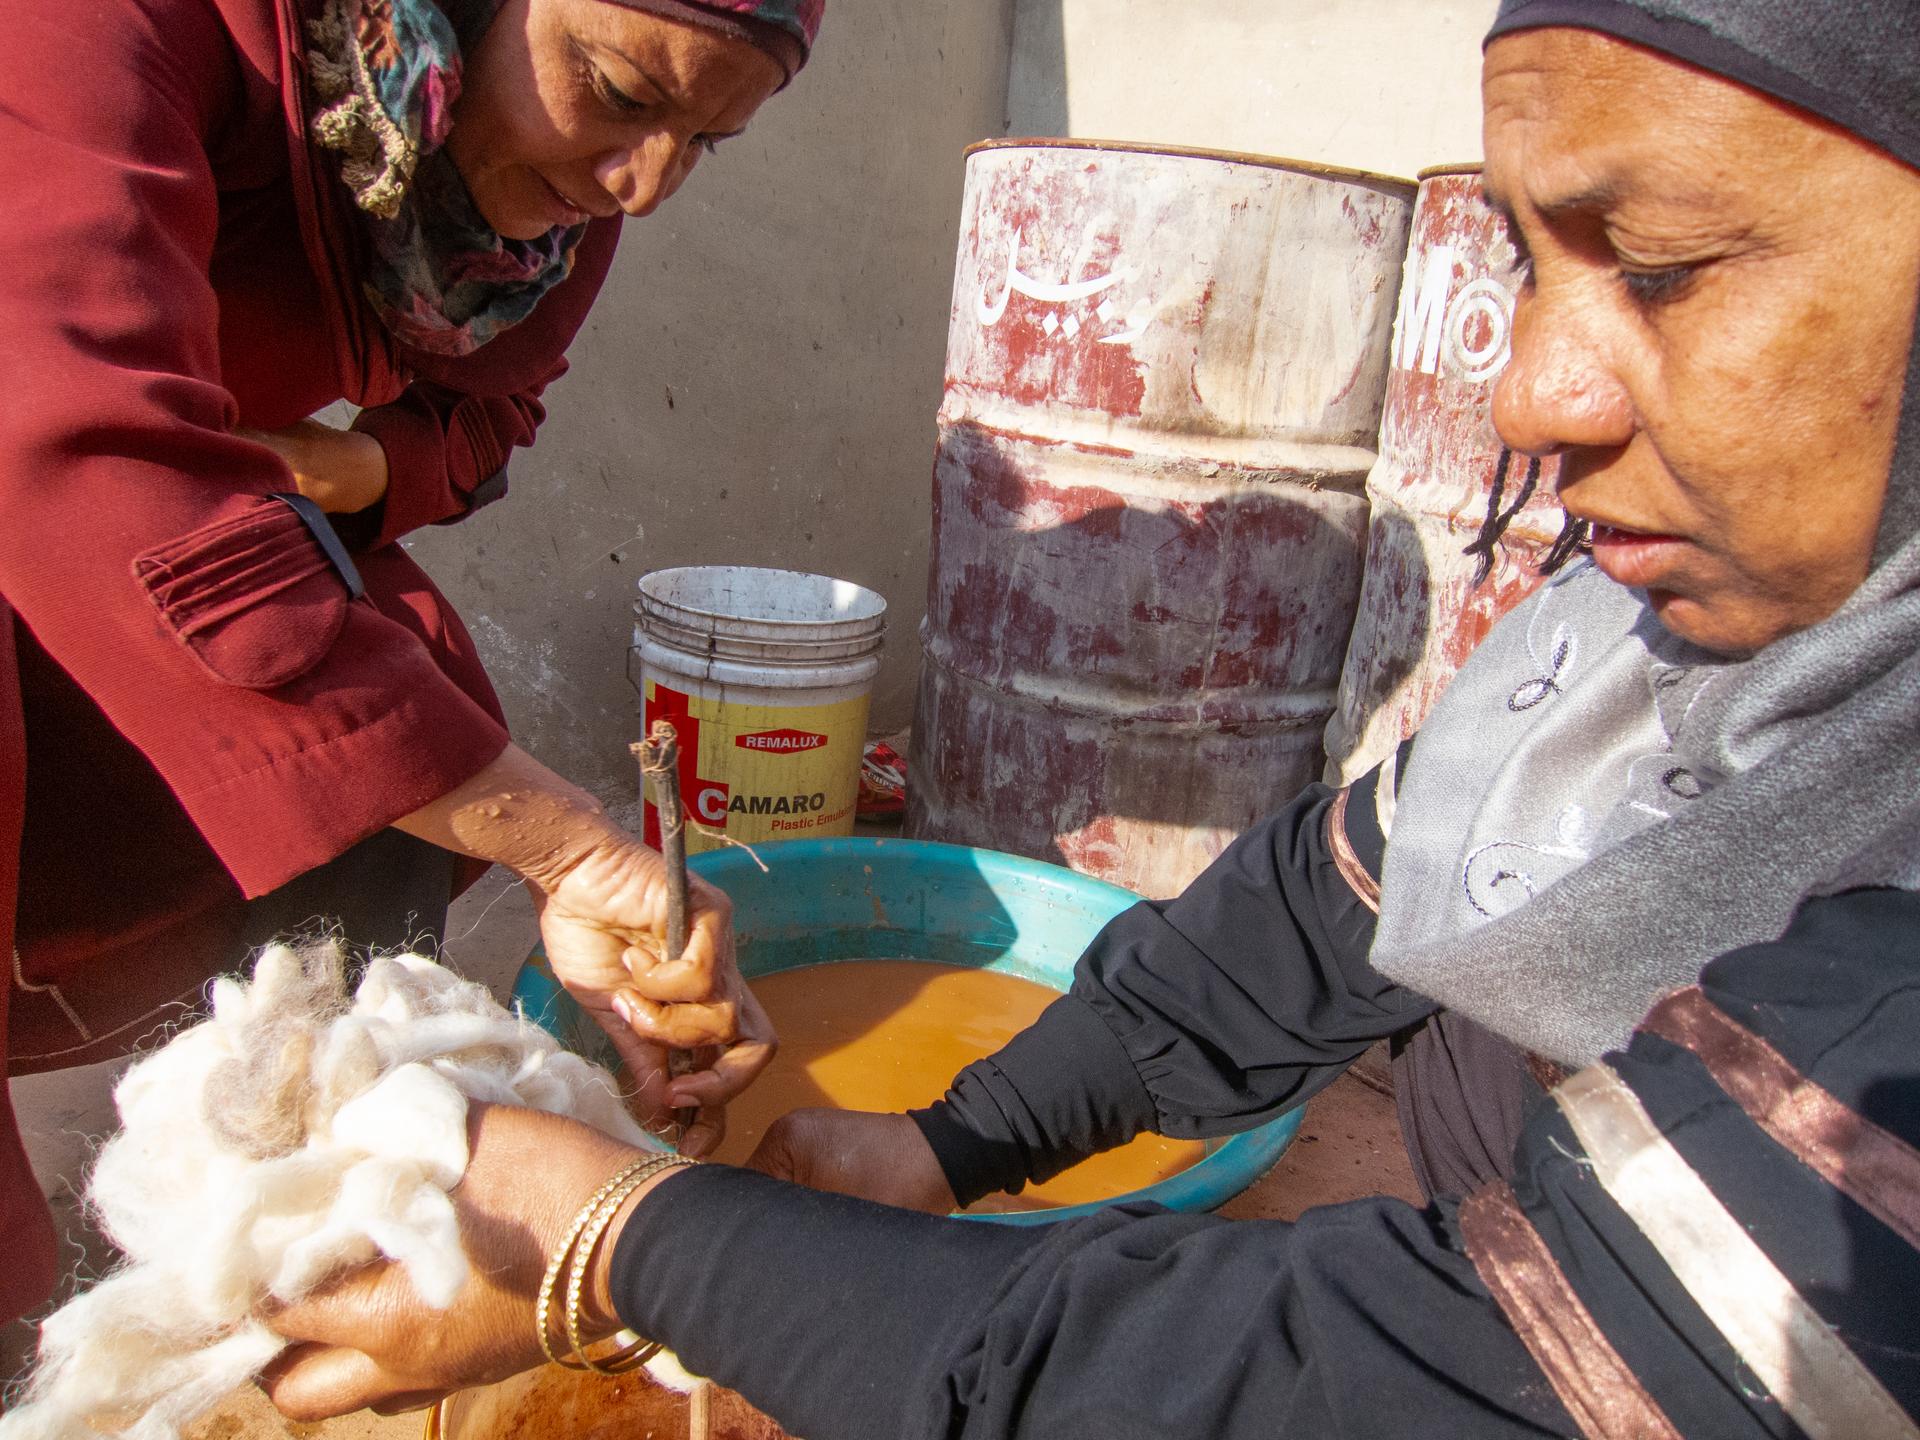 Ghawarna women dye wool using oxide-rich mud. Modaita, the yawning camel is unimpressed.